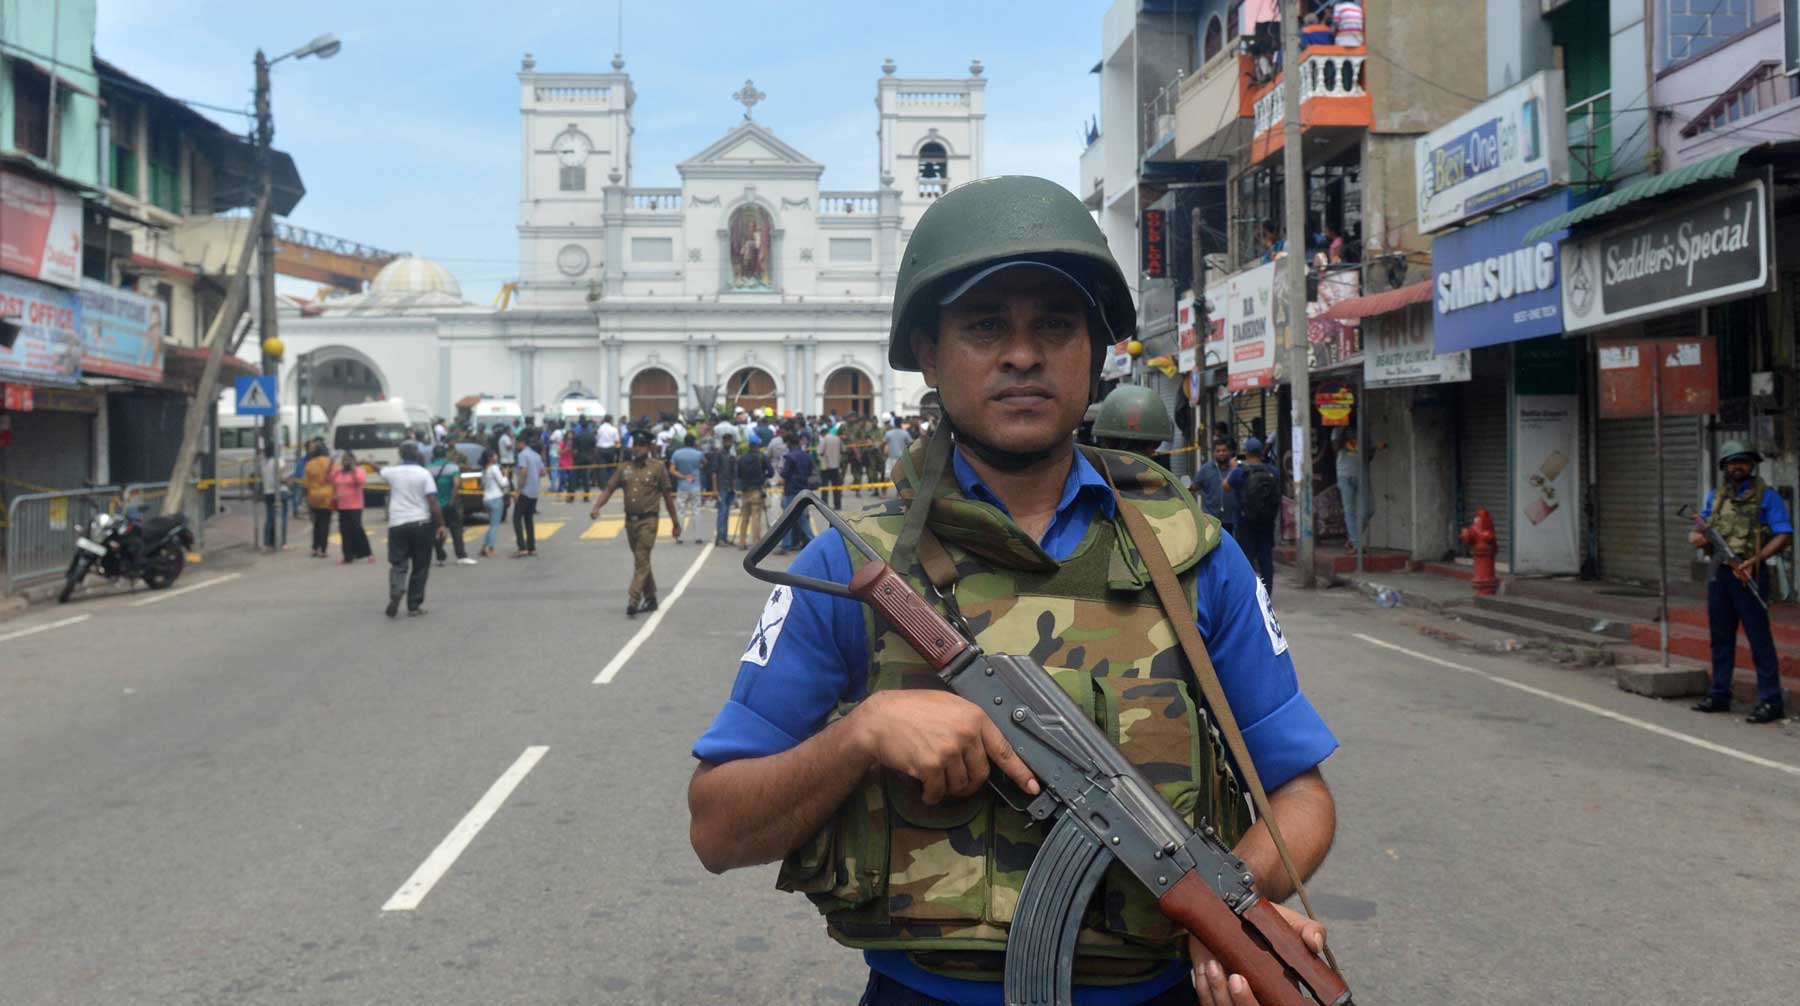 Взрывы в церквях и отелях устроили террористы-смертники, заявили в правительстве Фото: © GLOBAL LOOK press / imago-images.de